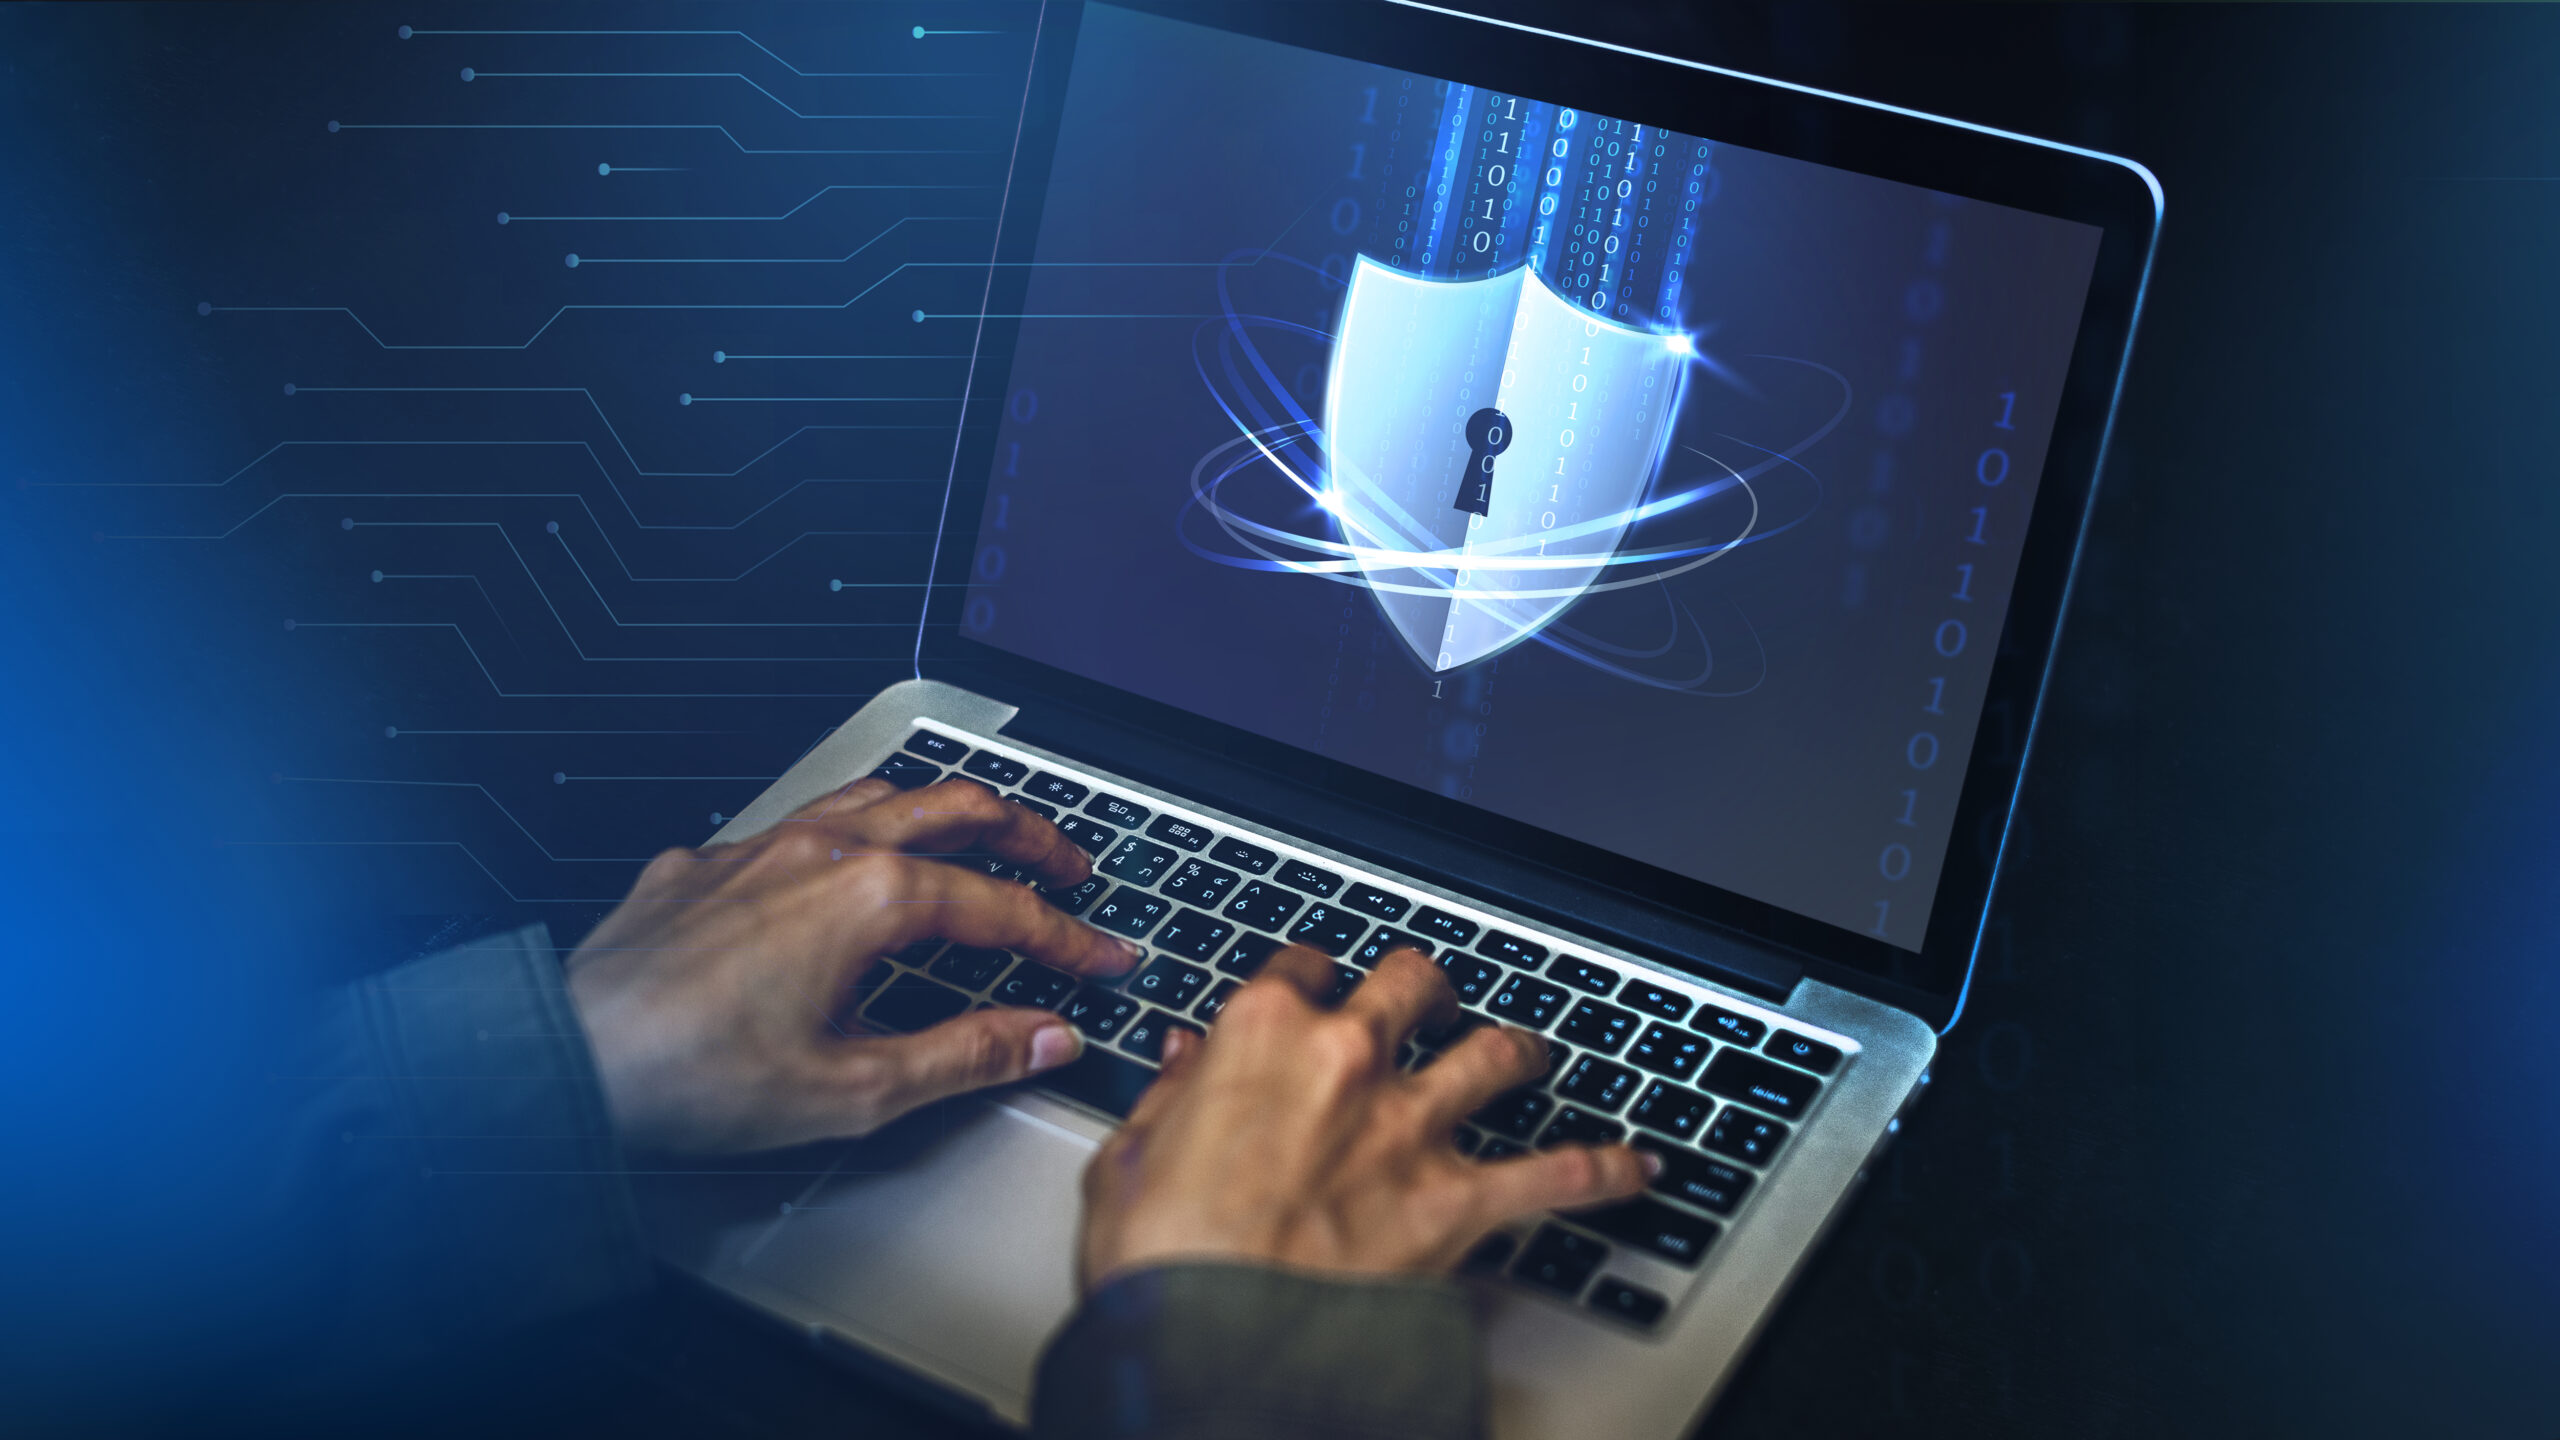 Imagem capa do conteúdo sobre Segurança da Aplicação onde há uma pessoa com um notebook com o símbolo de segurança, um escudo com fechadura, na tela.